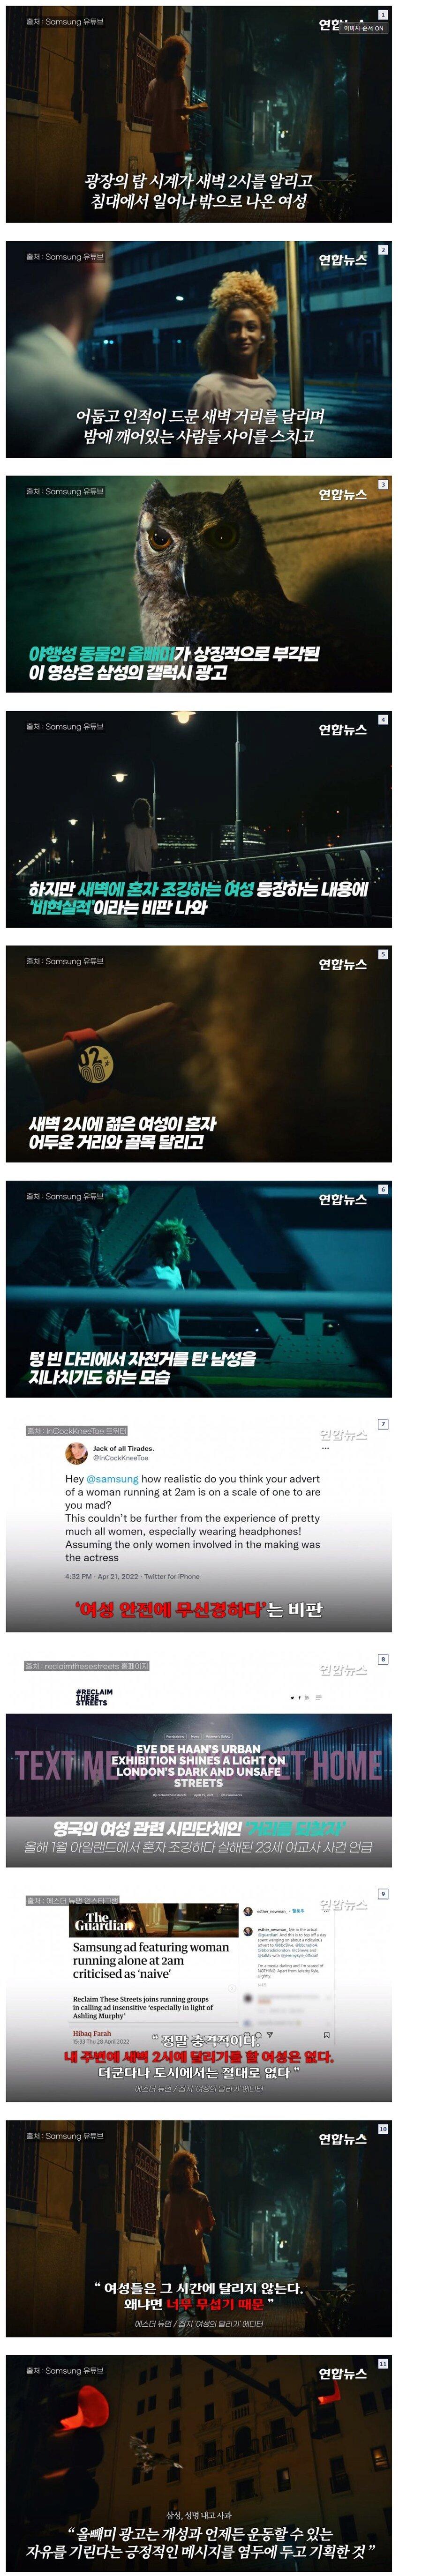 너무 한국에 맞췄다는 삼성 광고 논란.png.jpg